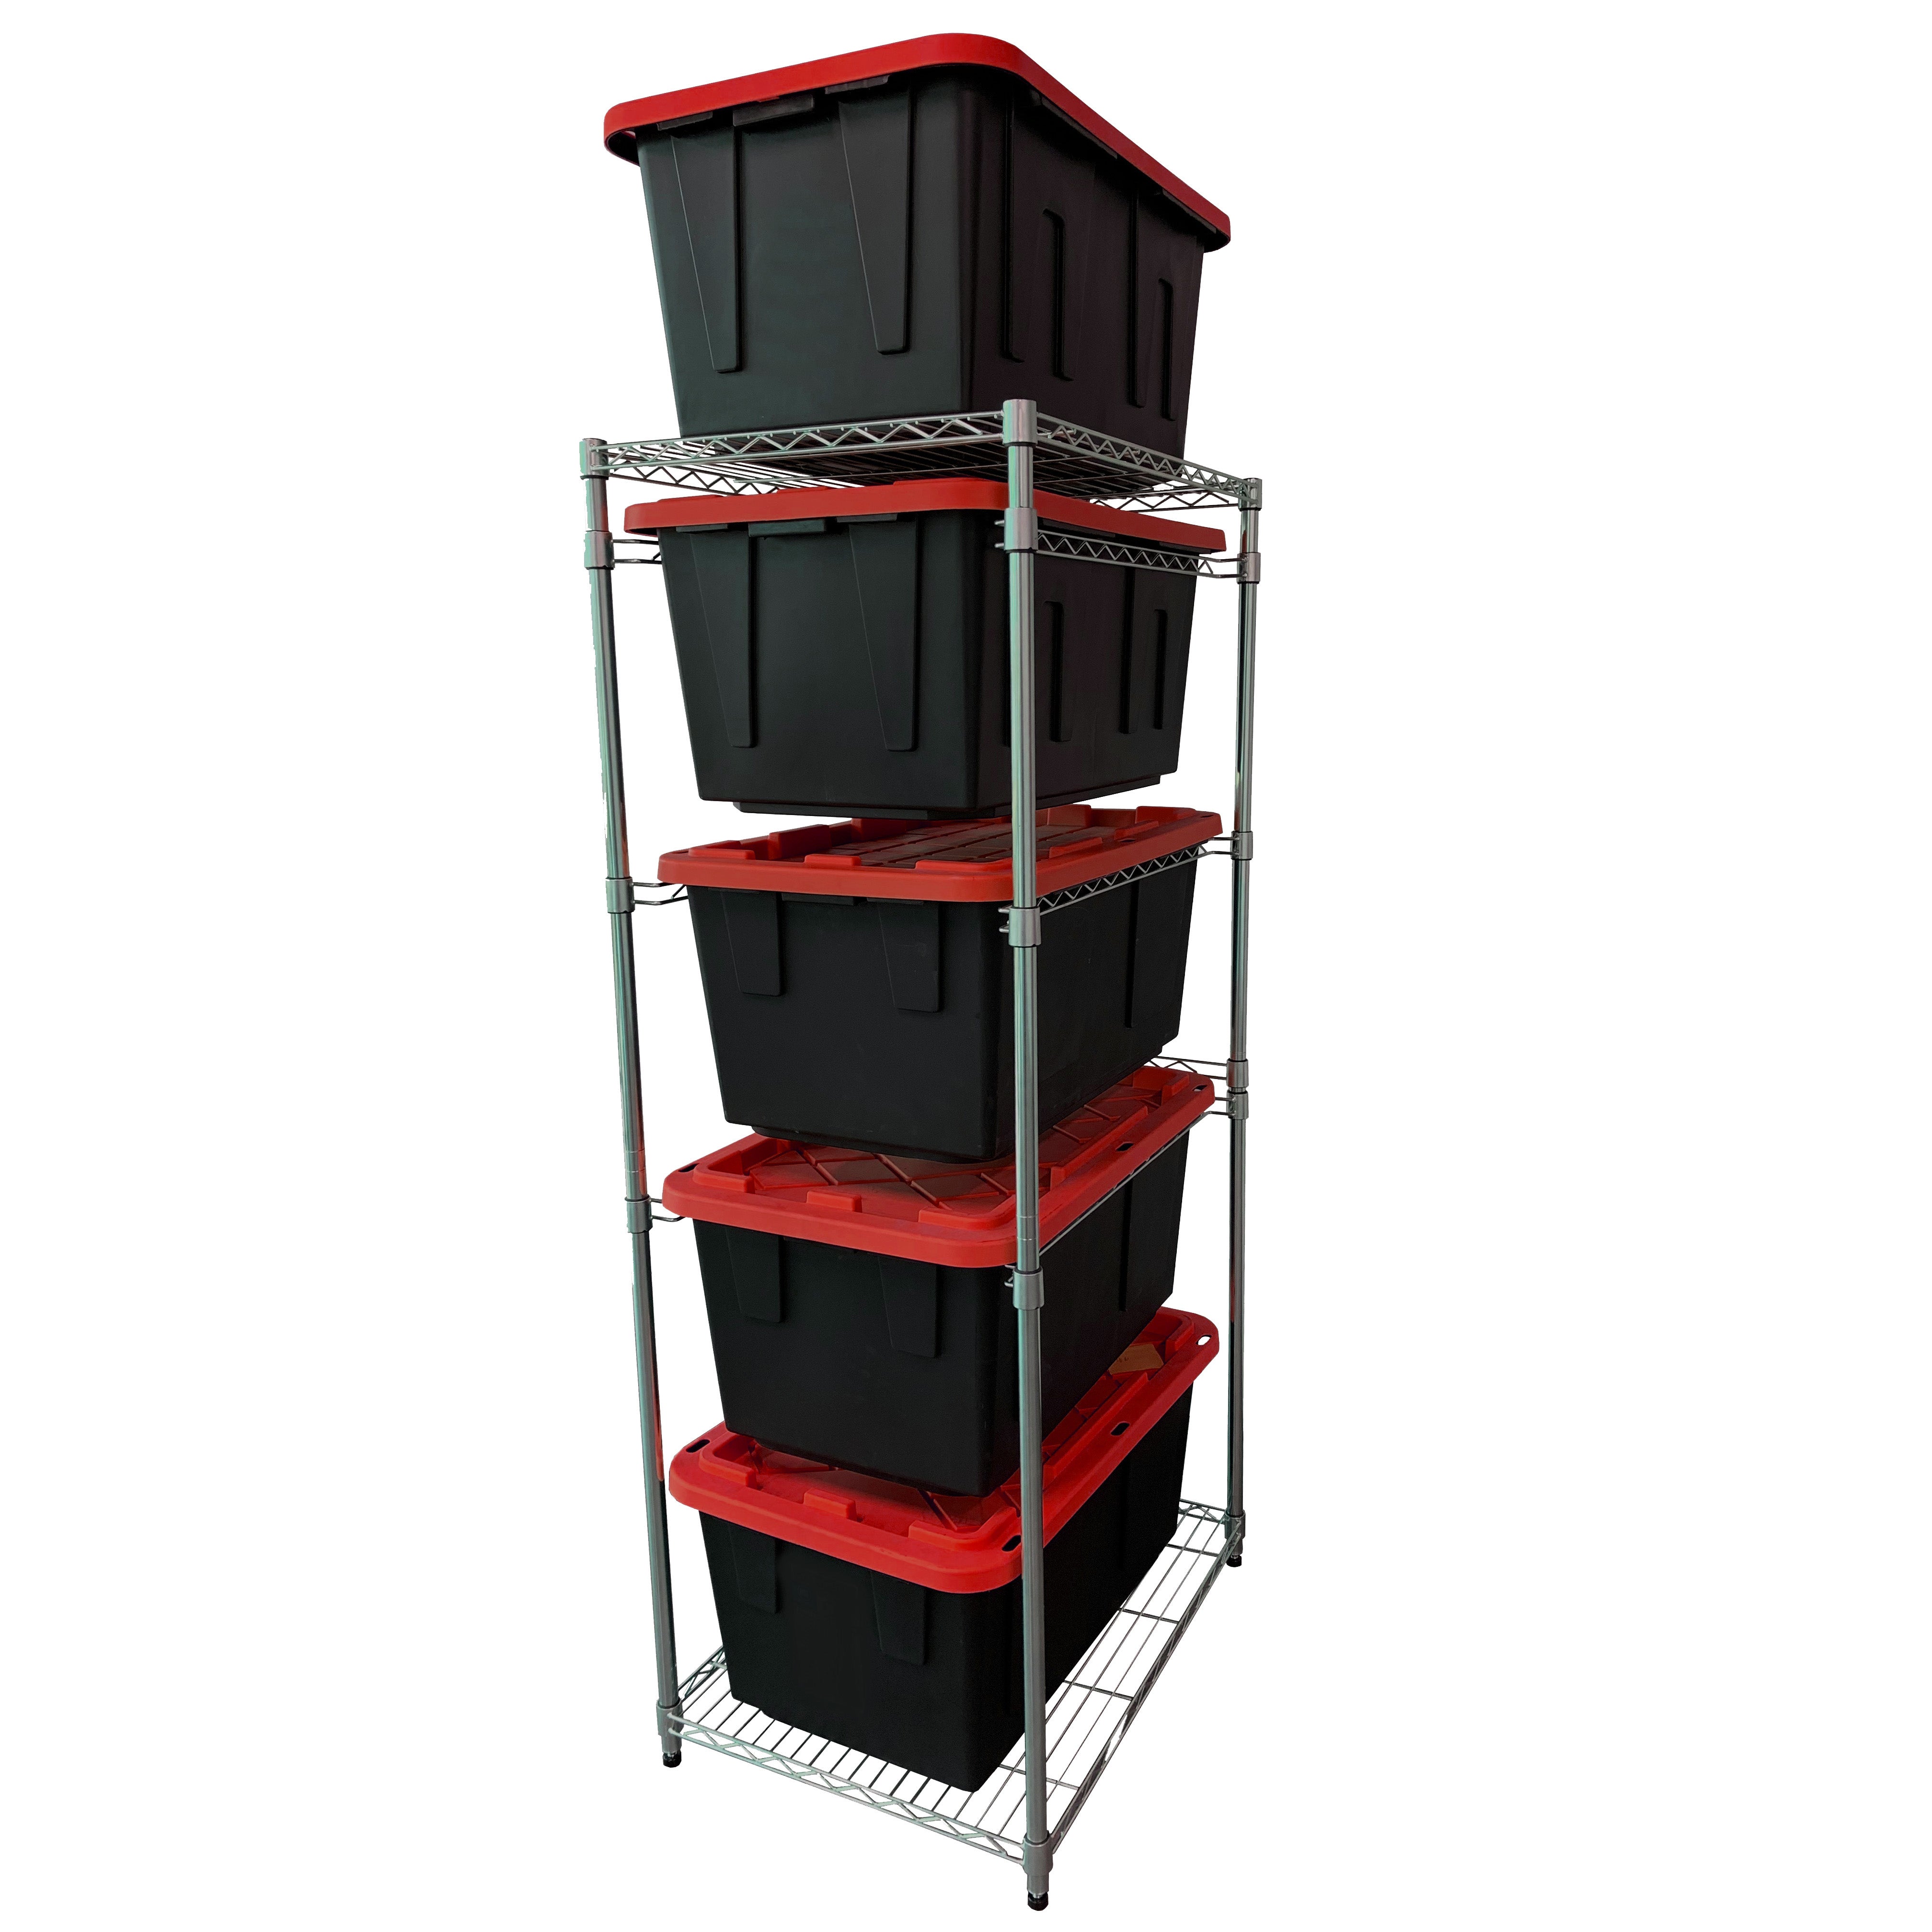 MonsterRax Bin Rack Combo - Includes 5 Storage Bins